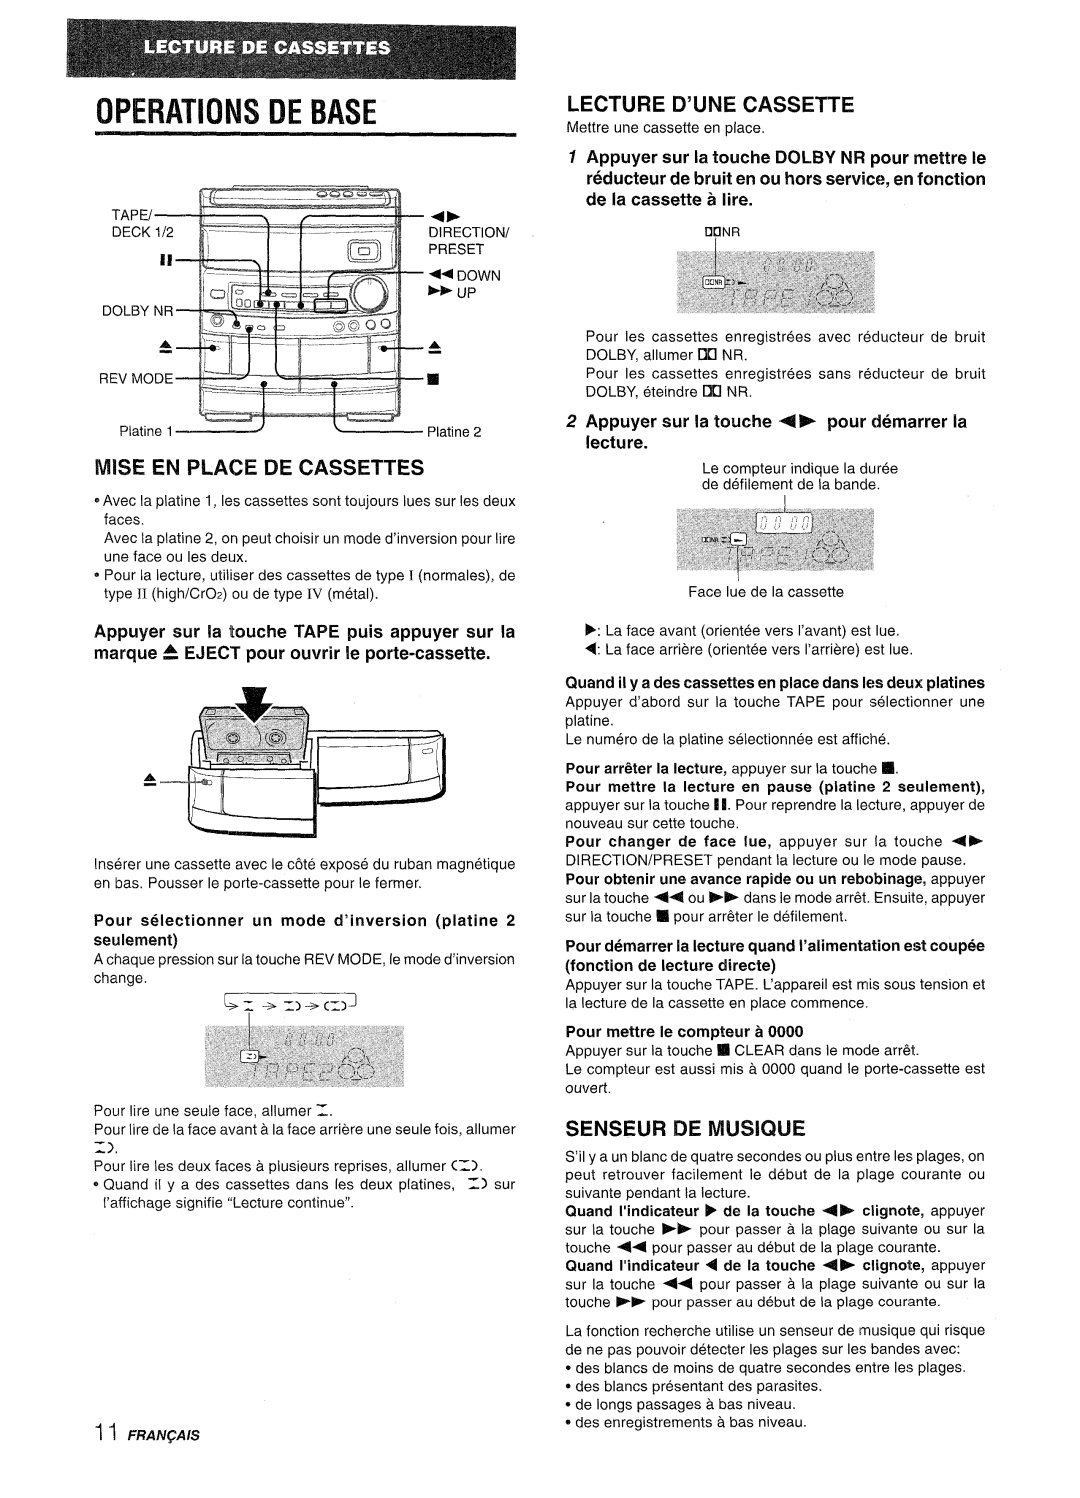 Aiwa CX-NV8000 manual Operations De Base, Mise En Place De Cassettes, Lecture D’Une Cassette, Senseur De Musique 